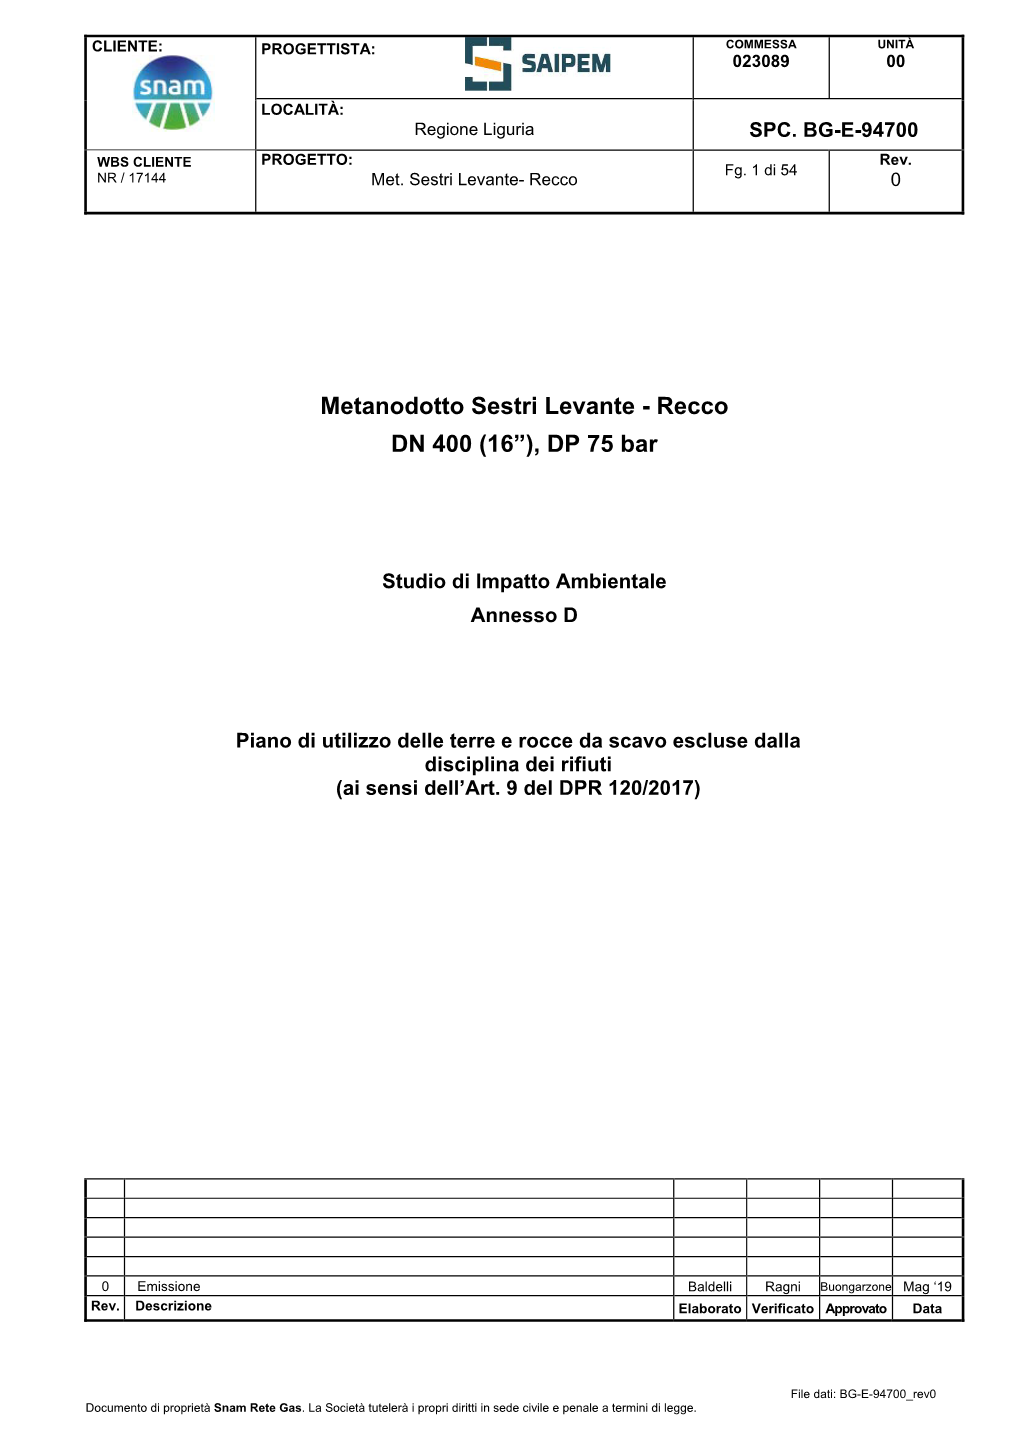 Metanodotto Sestri Levante - Recco DN 400 (16”), DP 75 Bar